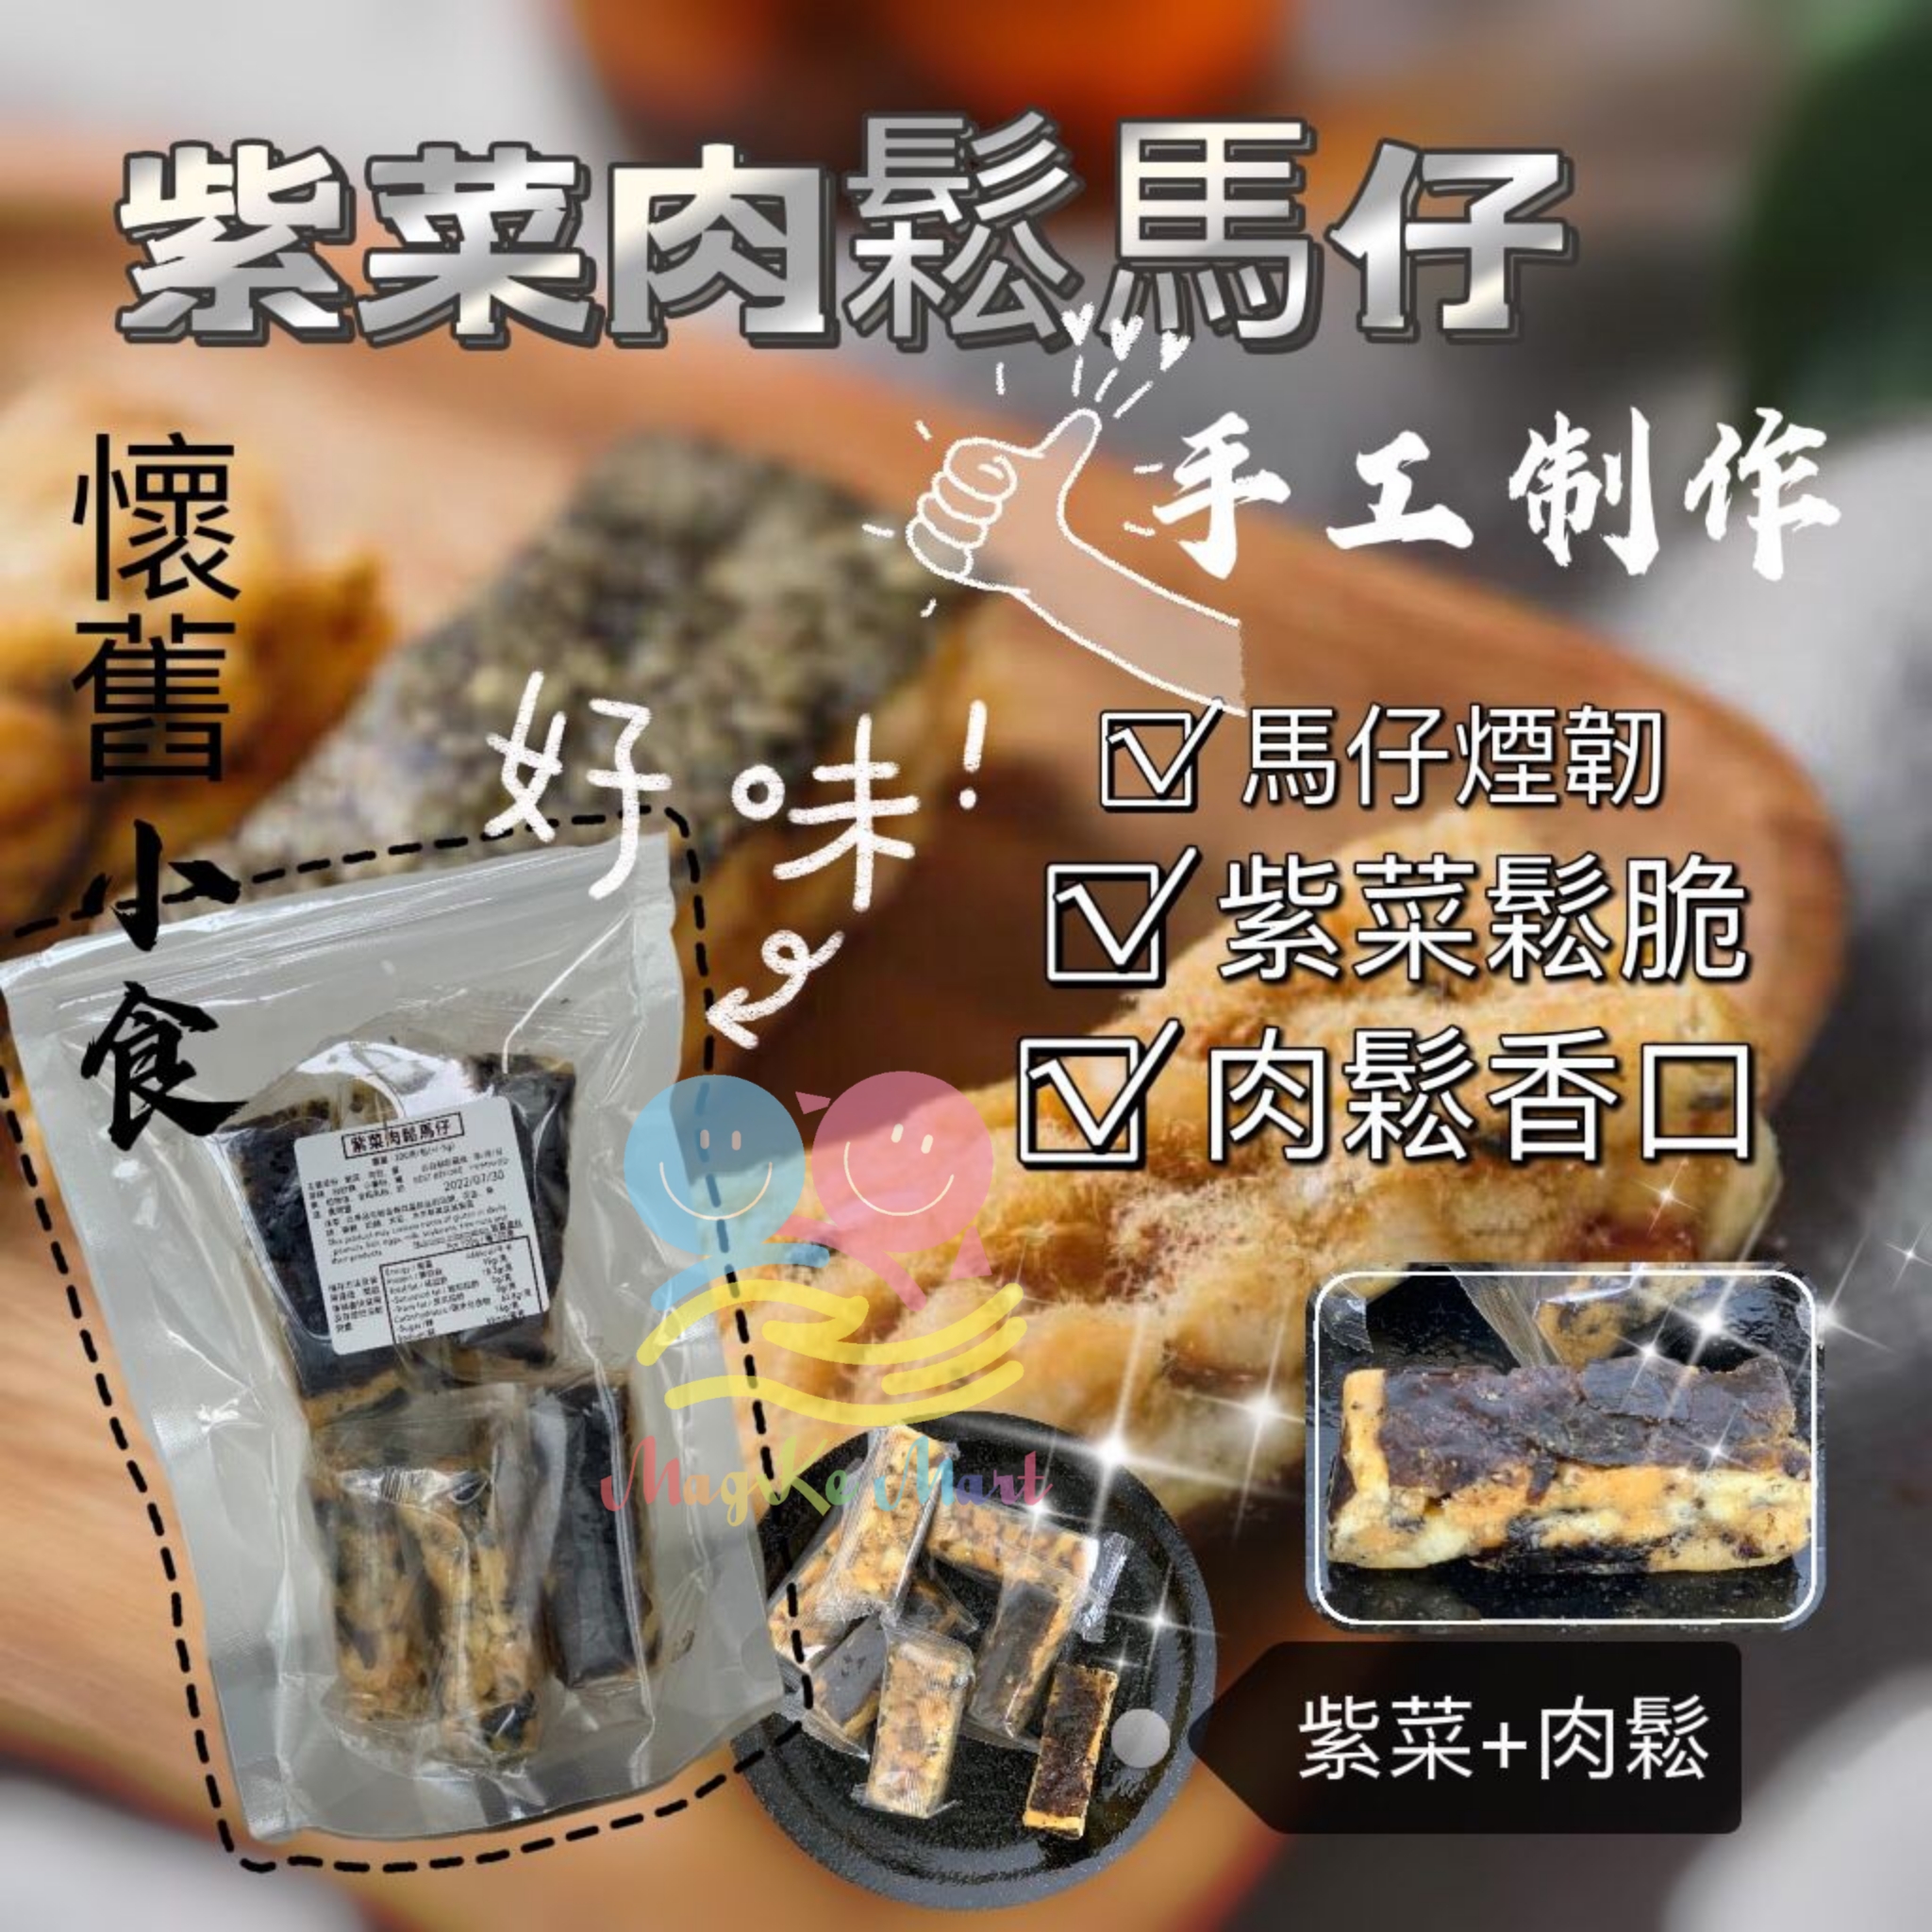 香港傳統懷舊小食紫菜肉鬆馬仔 200g